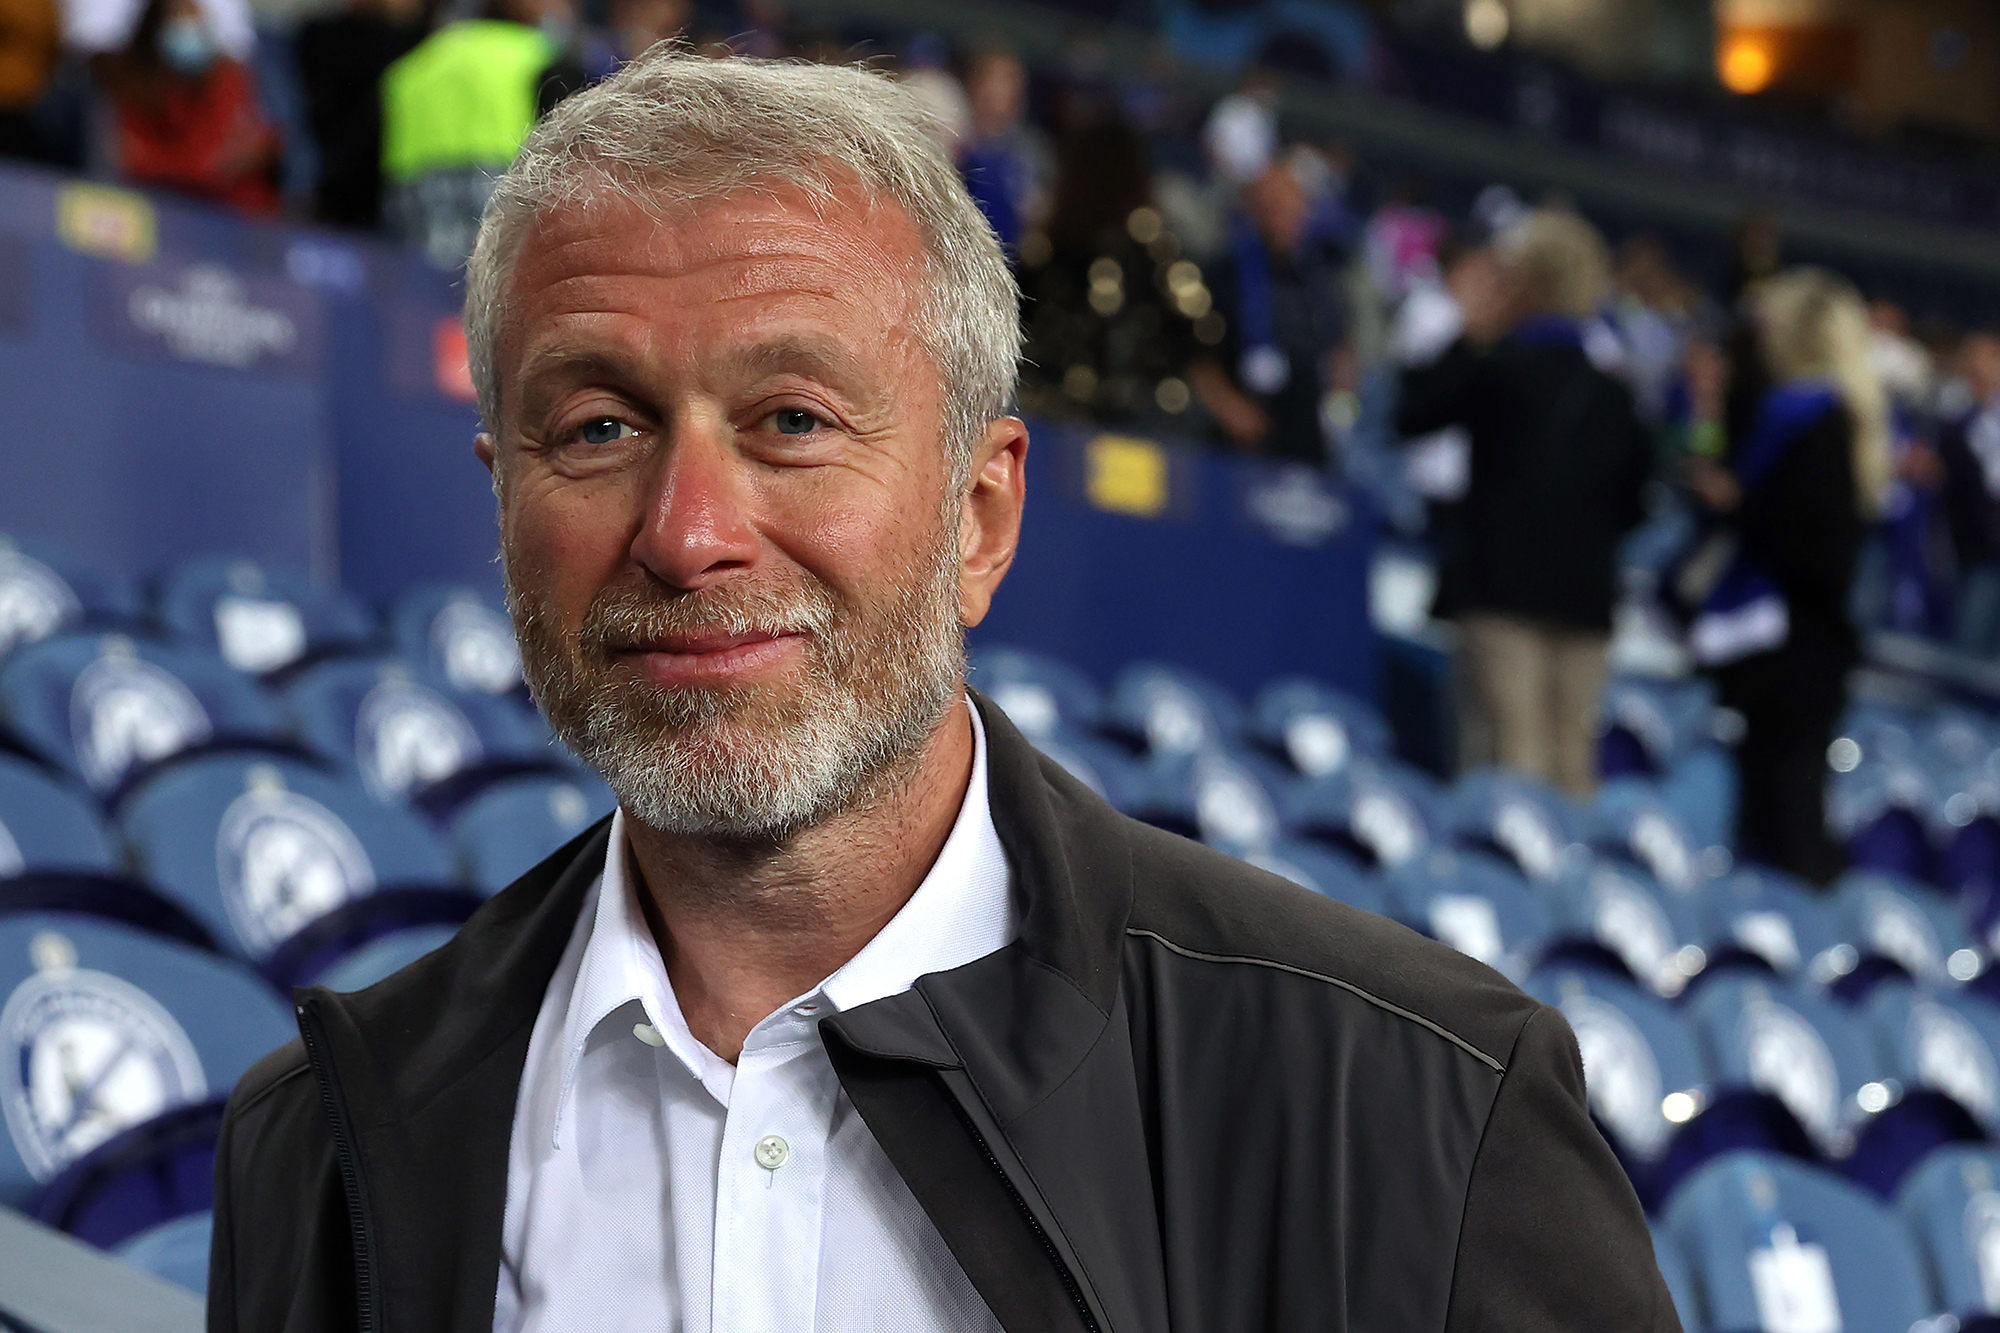 Roman Abramovich attends a Chelsea FC match in Porto, Portugal in 2021.